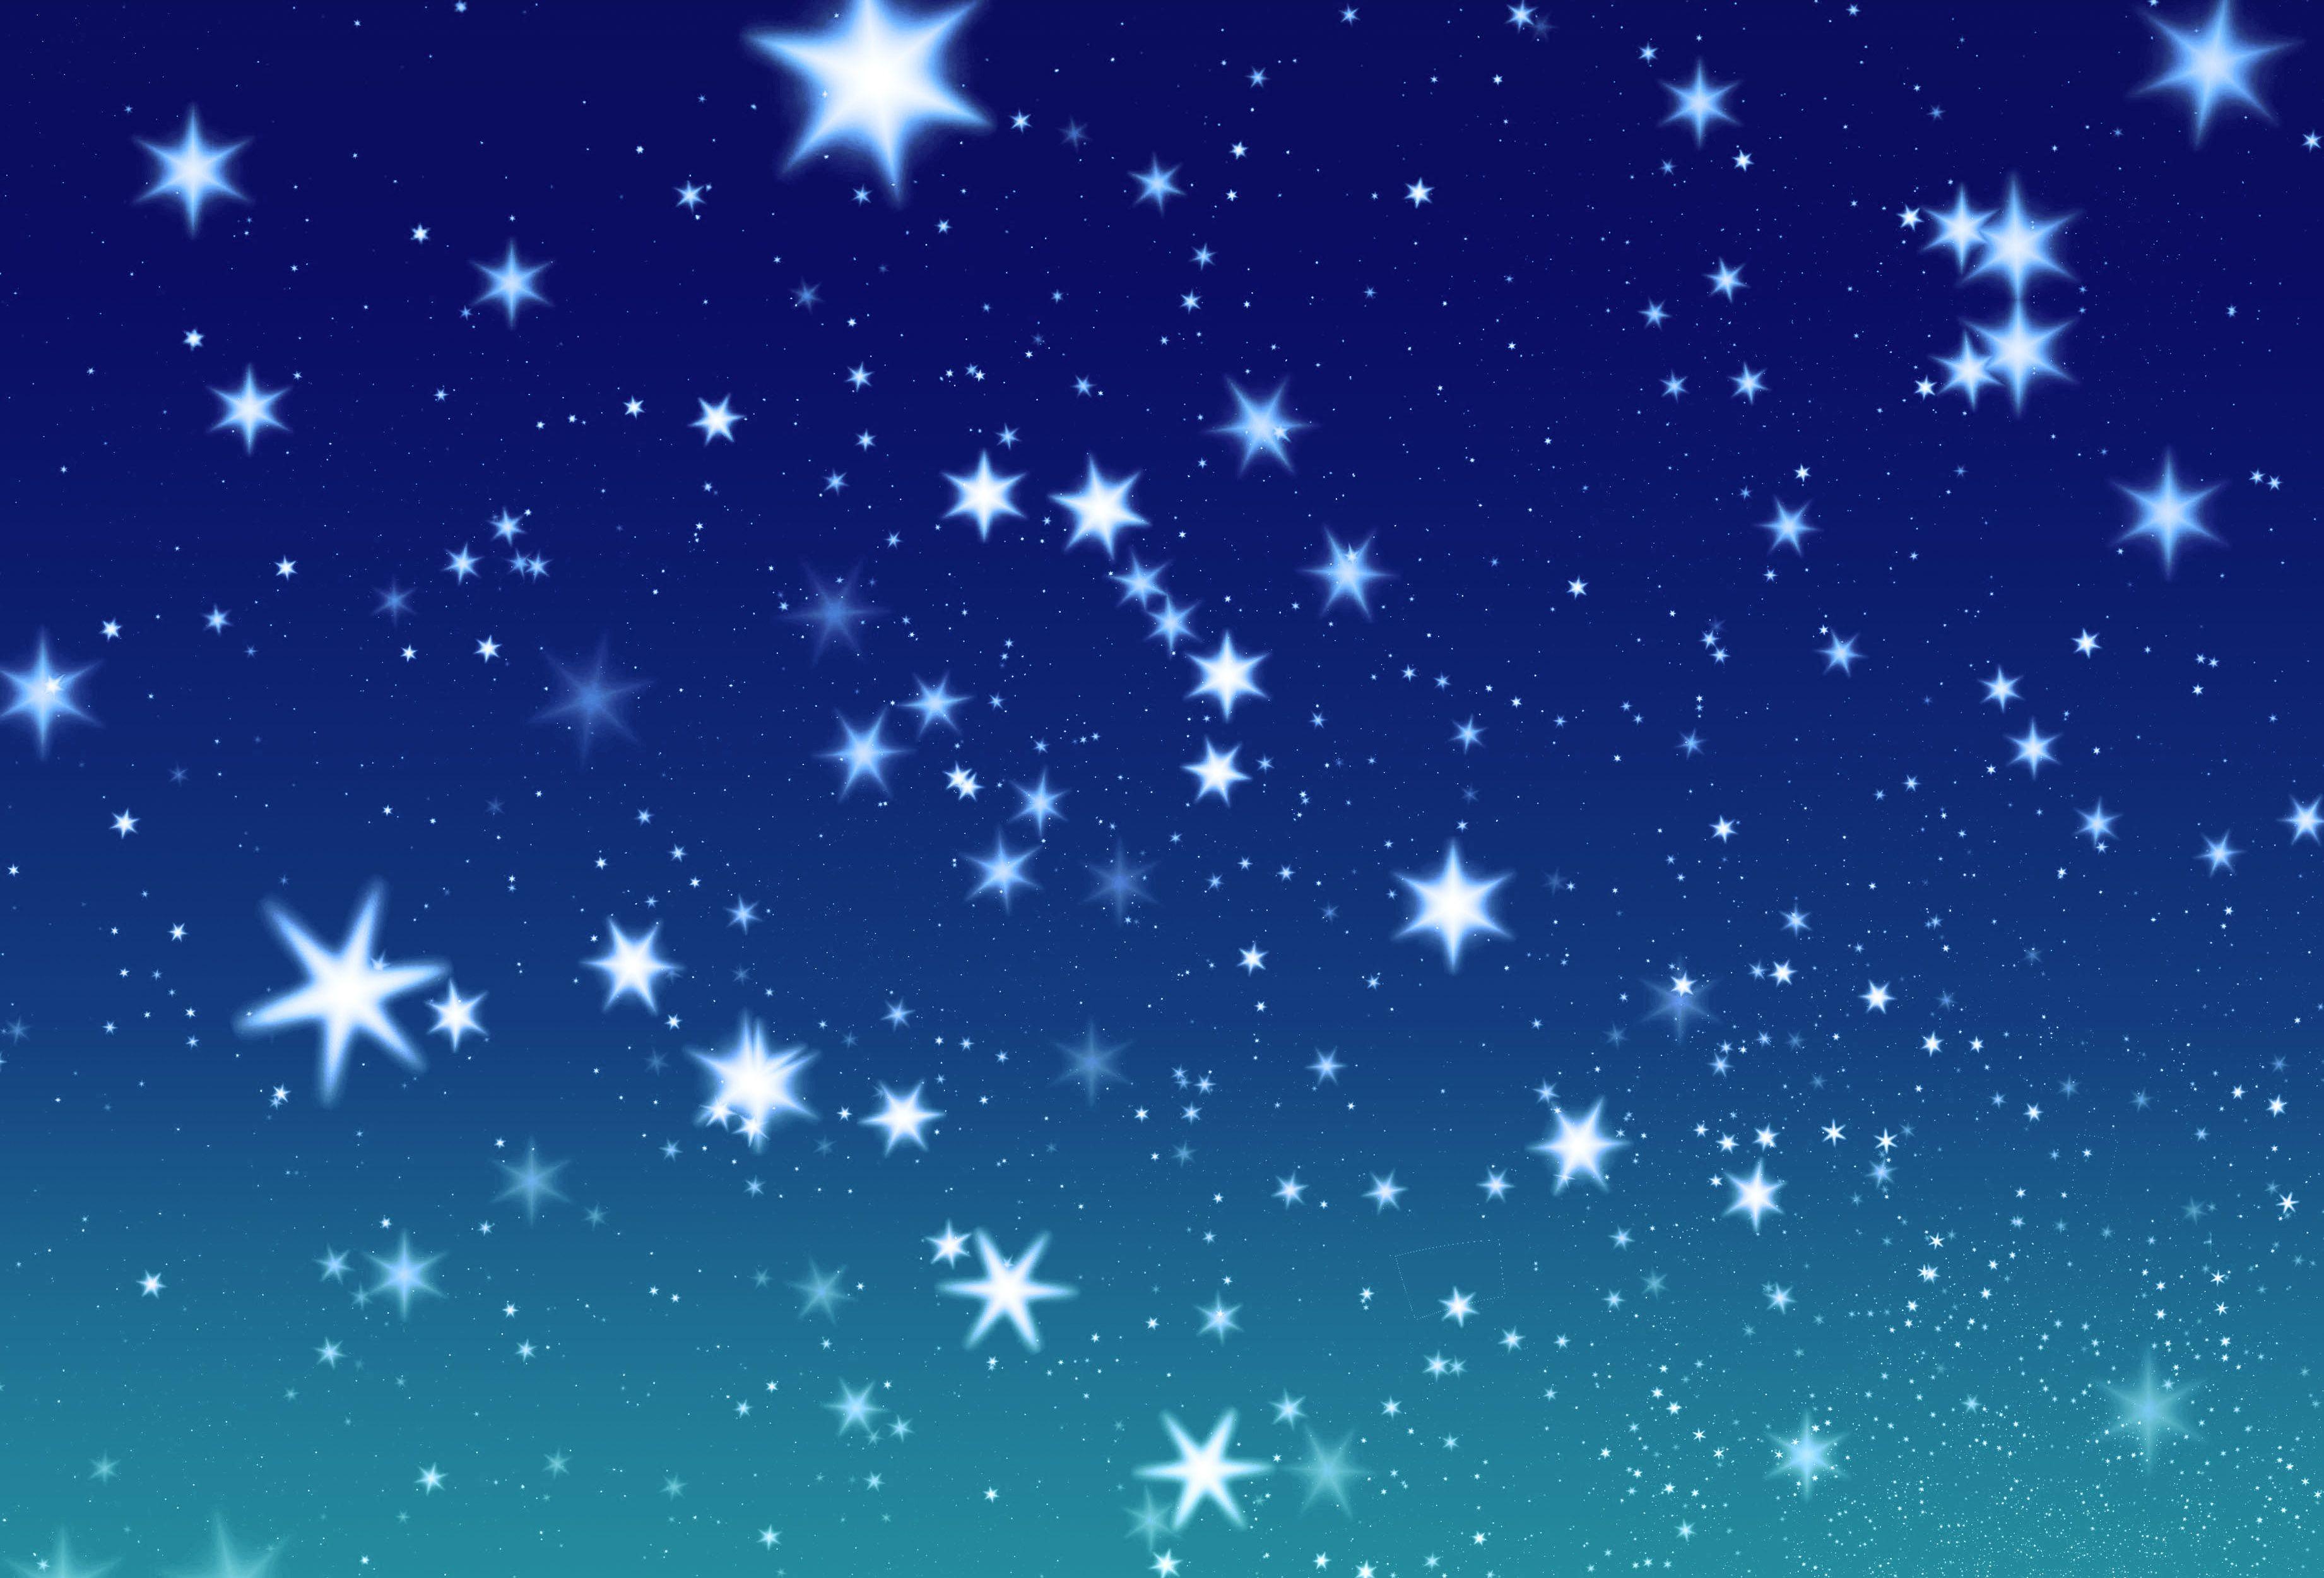 Stars In The Sky Wallpaper